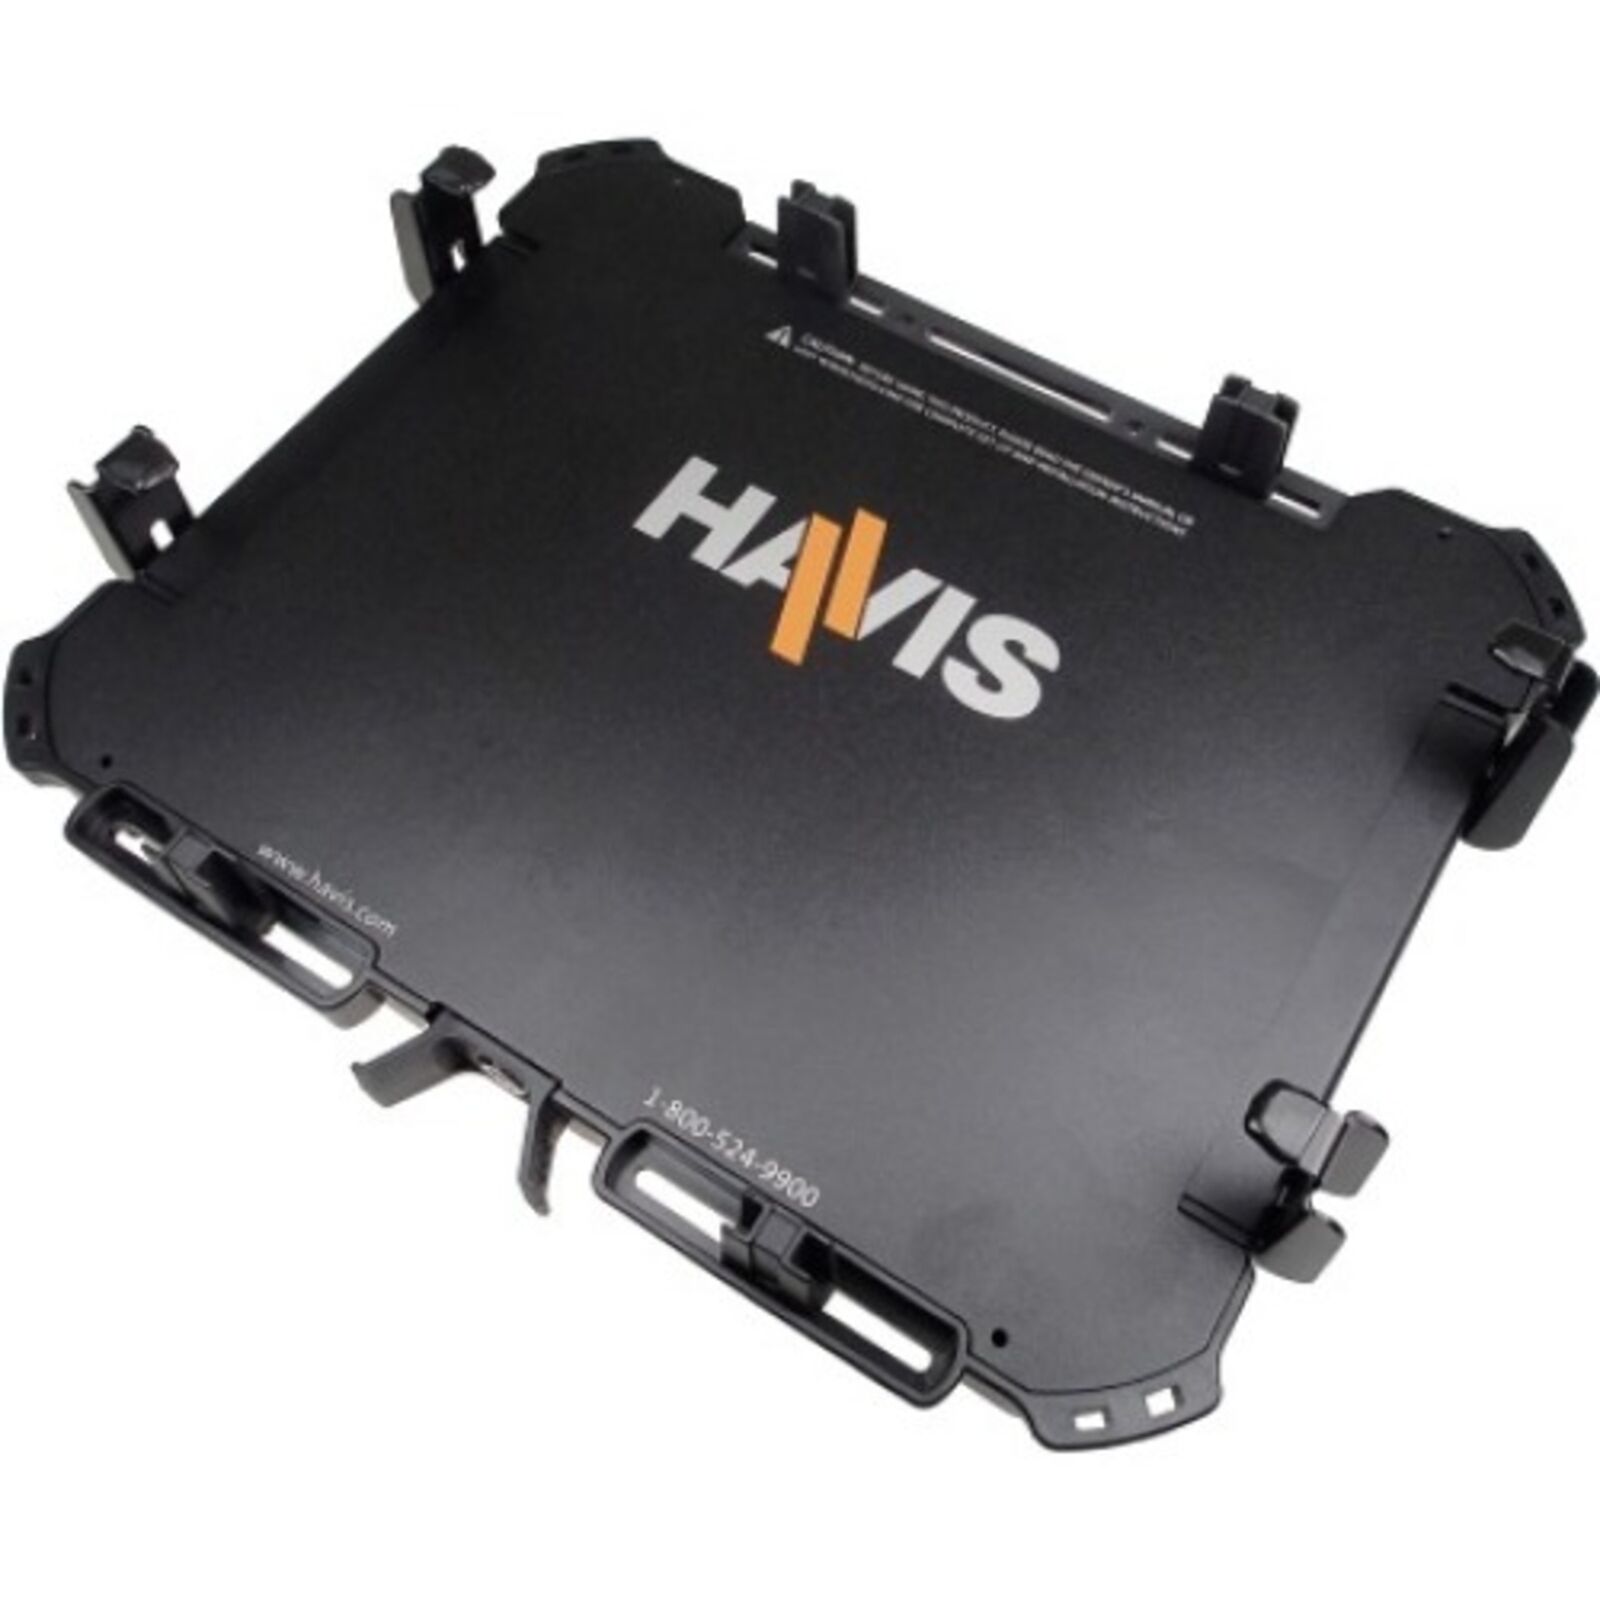 Havis - UT-1001 - Havis Universal Rugged Cradle For Approximately 11-14